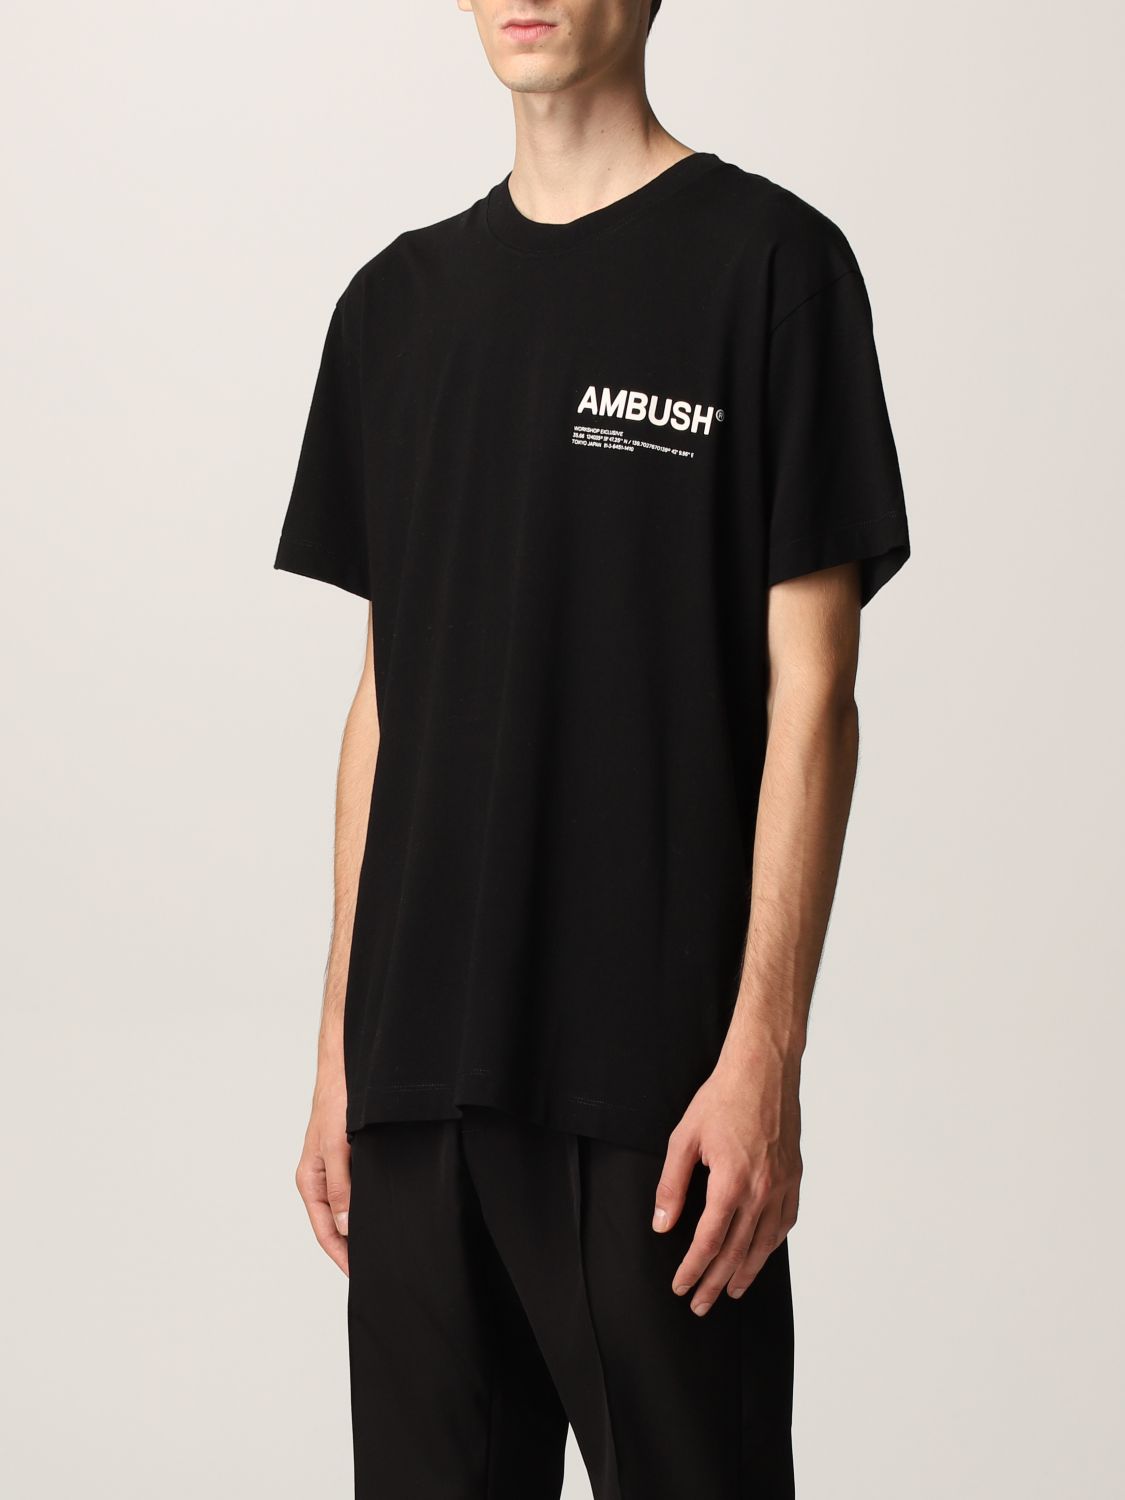 AMBUSH: Tシャツ メンズ - ブラック | Tシャツ Ambush 